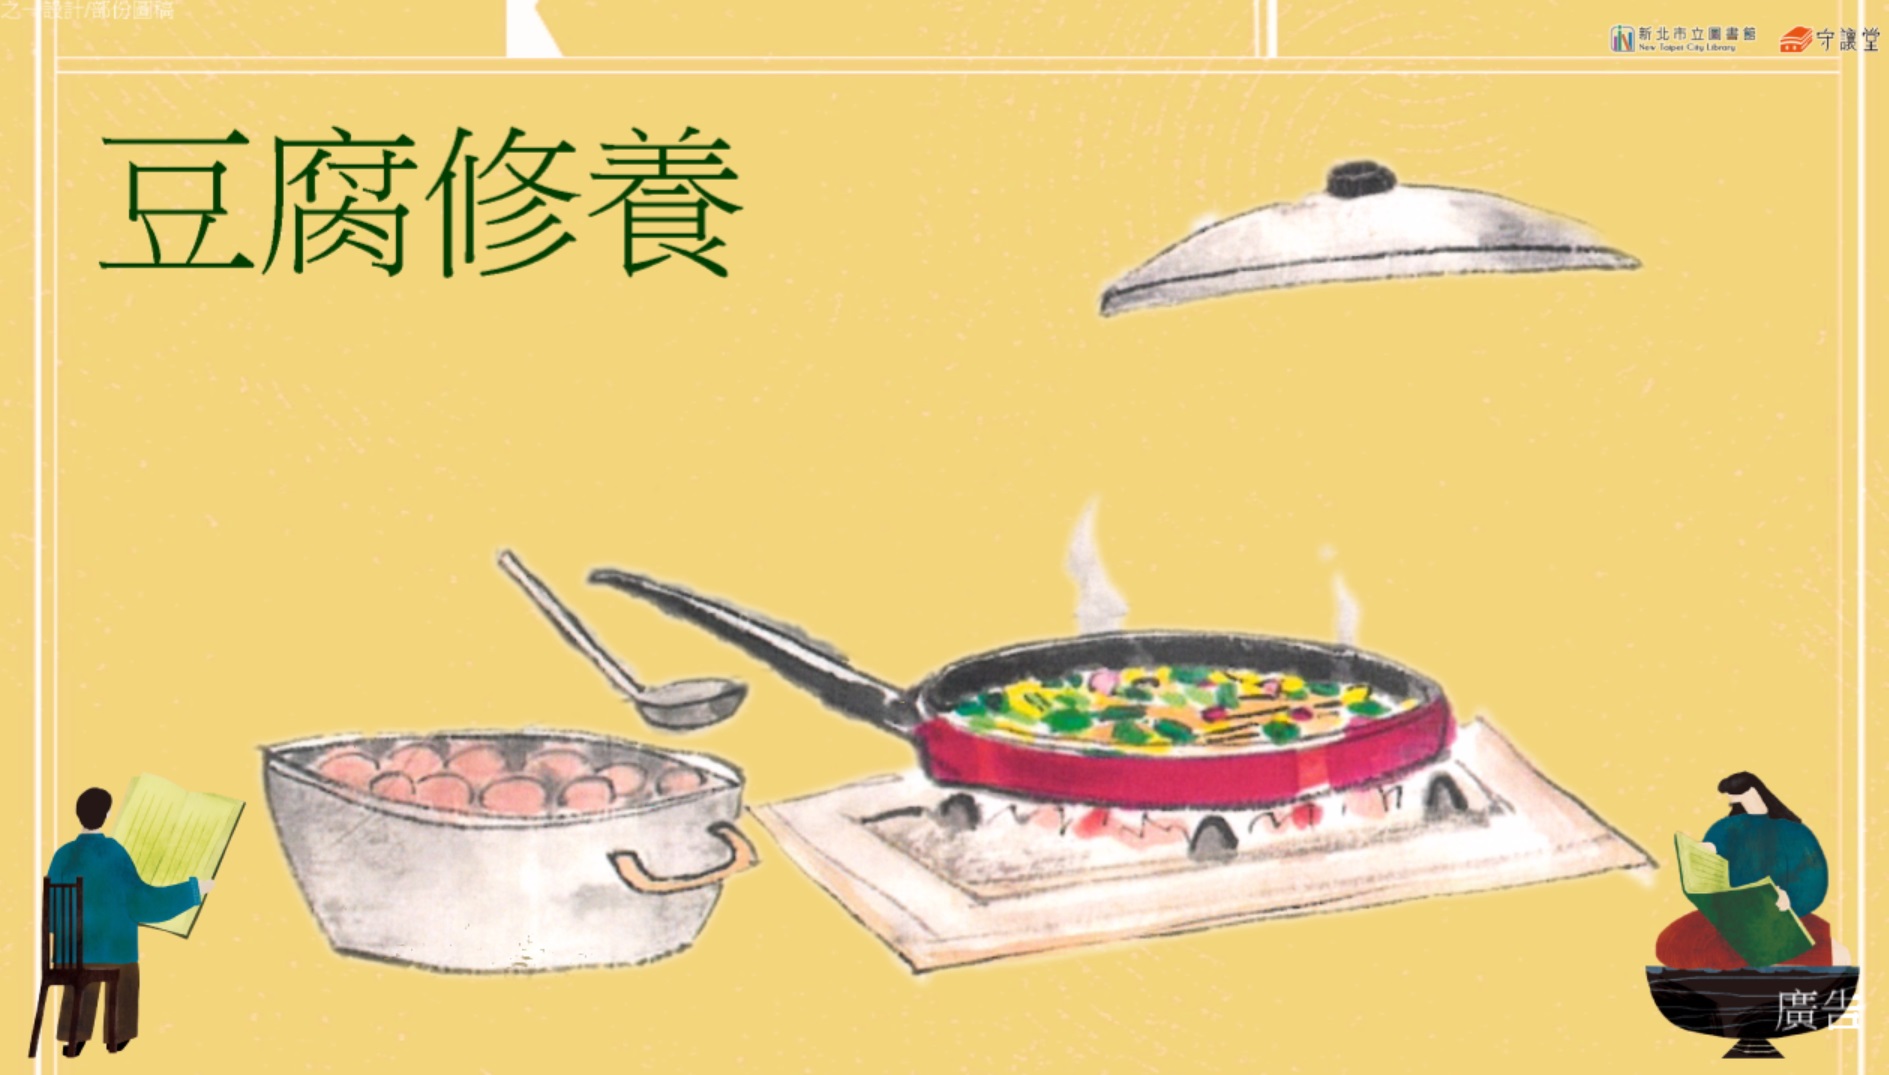 焦桐飲食講堂—豆腐修養